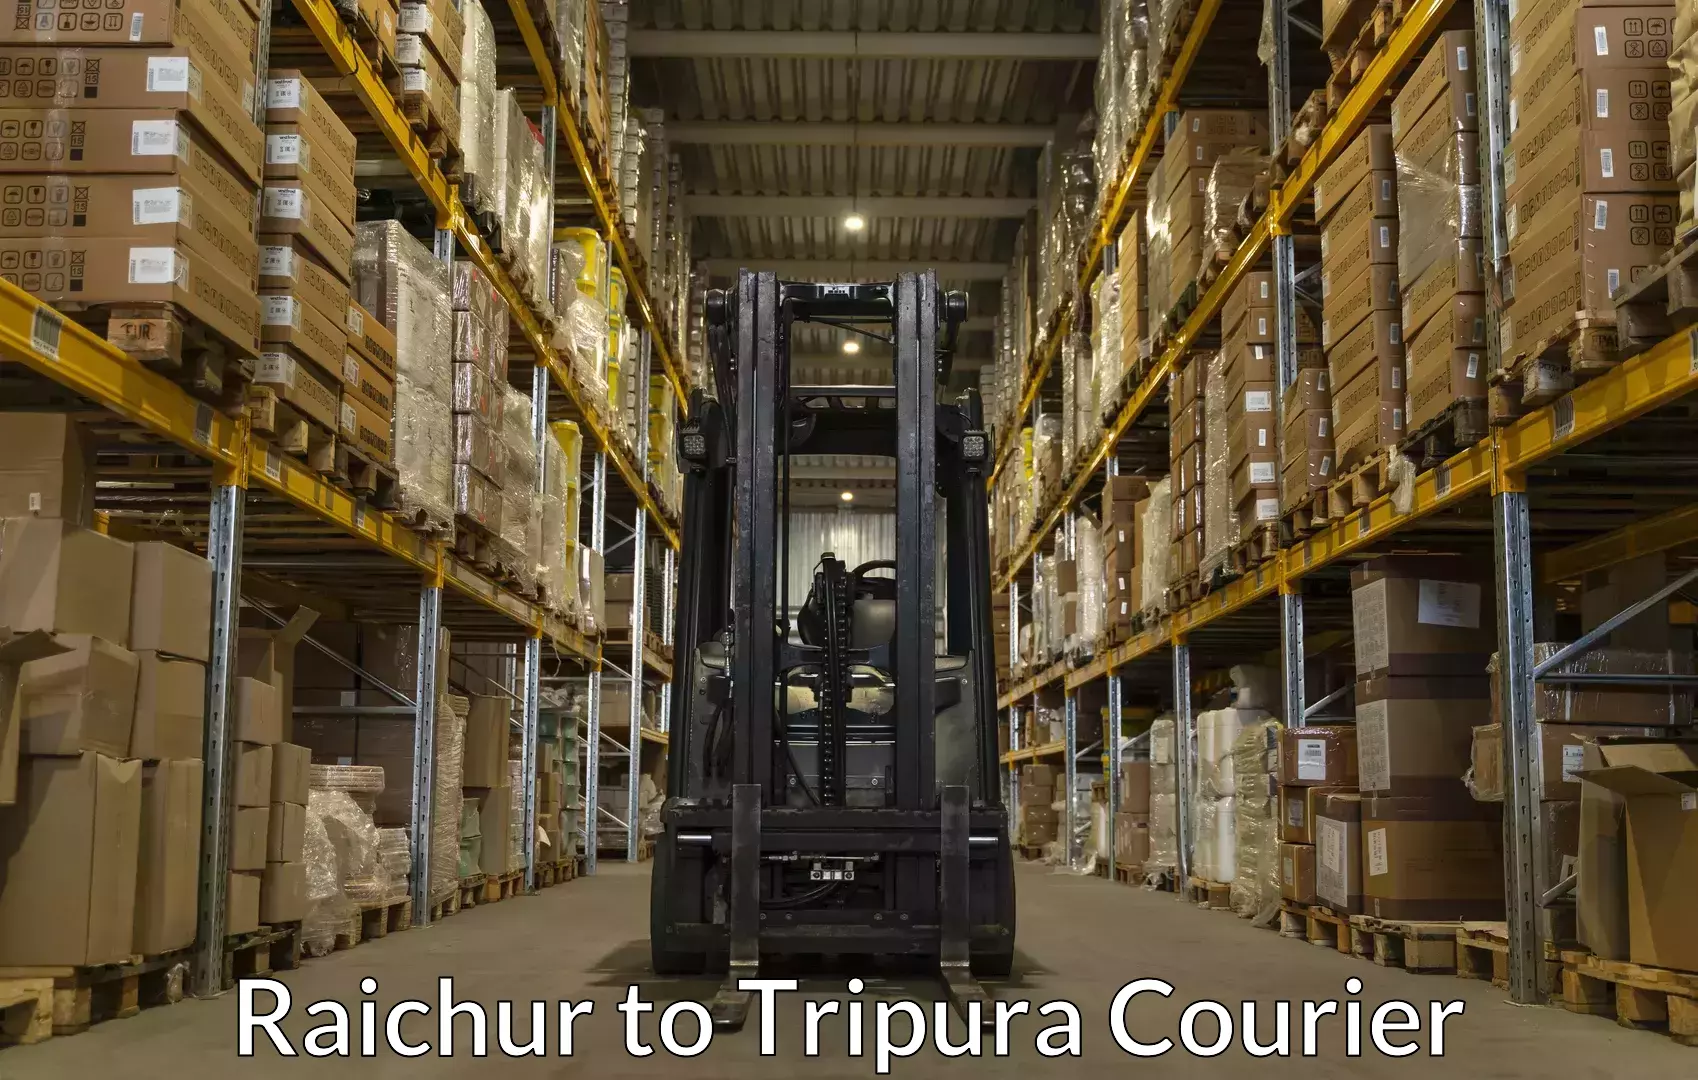 Luggage transport consultancy Raichur to Agartala